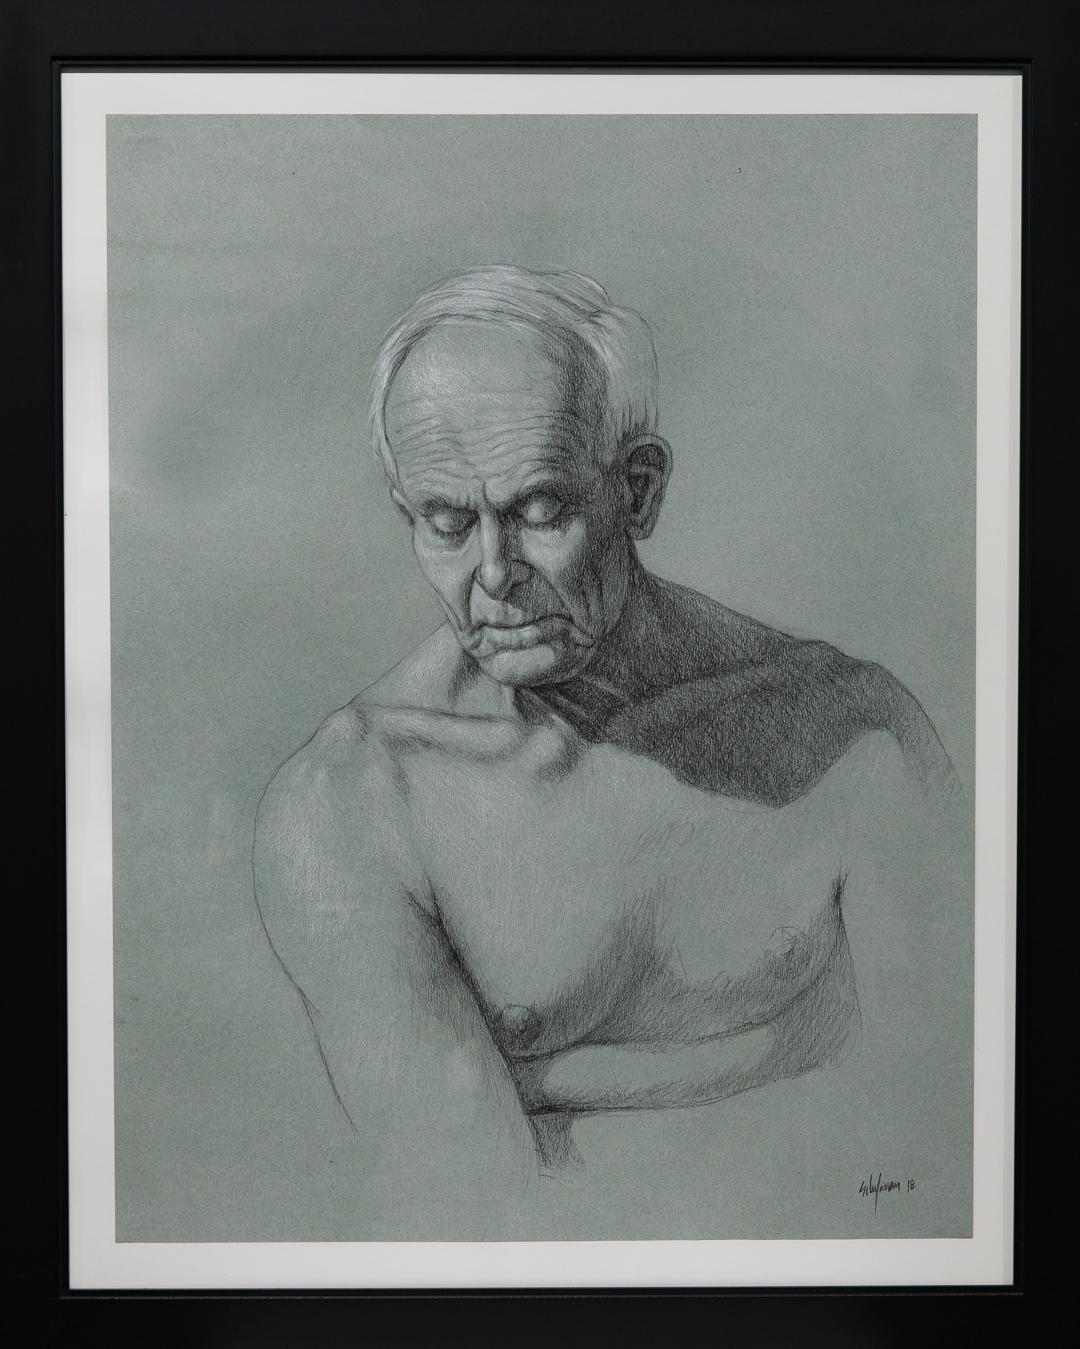 VENTE UNE SEMAINE SEULEMENT

"Portrait Study" est un portrait bien détaillé d'un homme nu d'un certain âge. Elle est signée et datée par l'artiste. Michael Hodges a écrit sur Robert Schefman pour le Detroit News en déclarant : "Il explore des idées